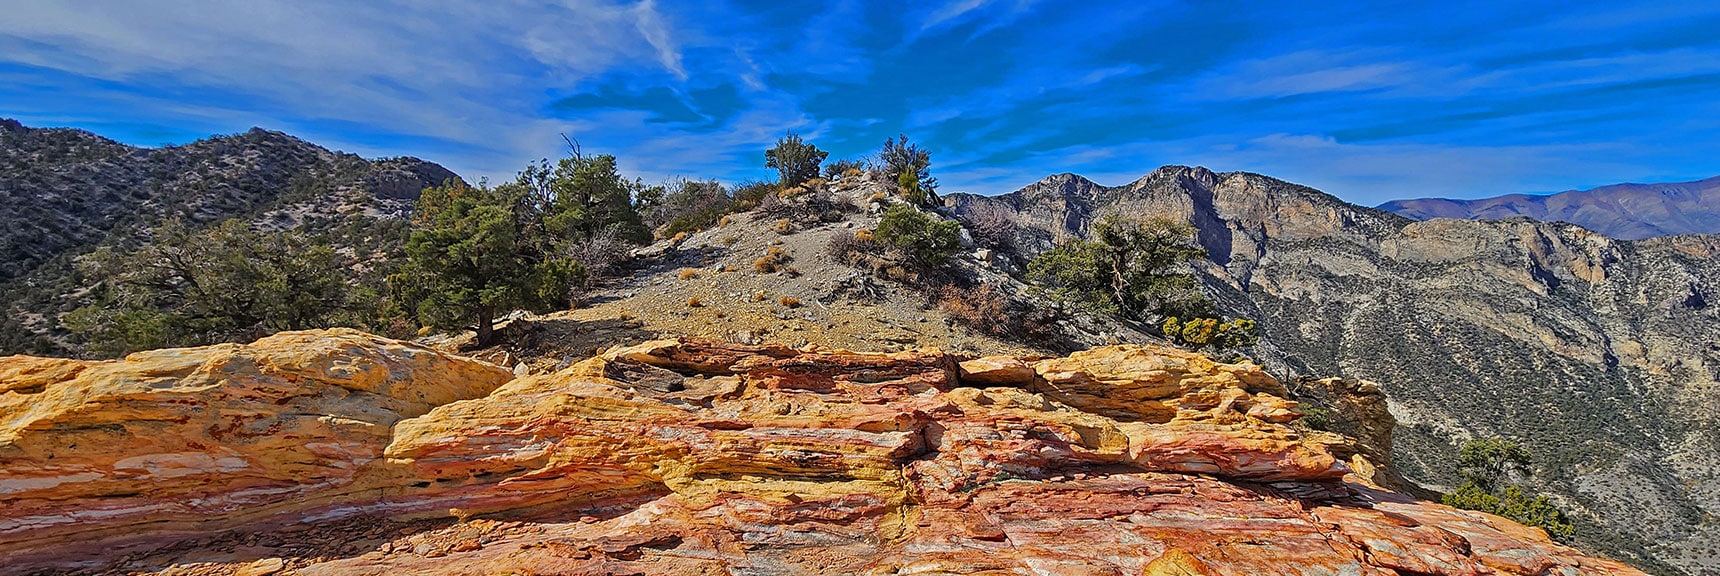 Ascend Beyond the Jurassic Sandstone South Toward North Peak | North Upper Crest Ridgeline | Rainbow Mountain Wilderness, Nevada